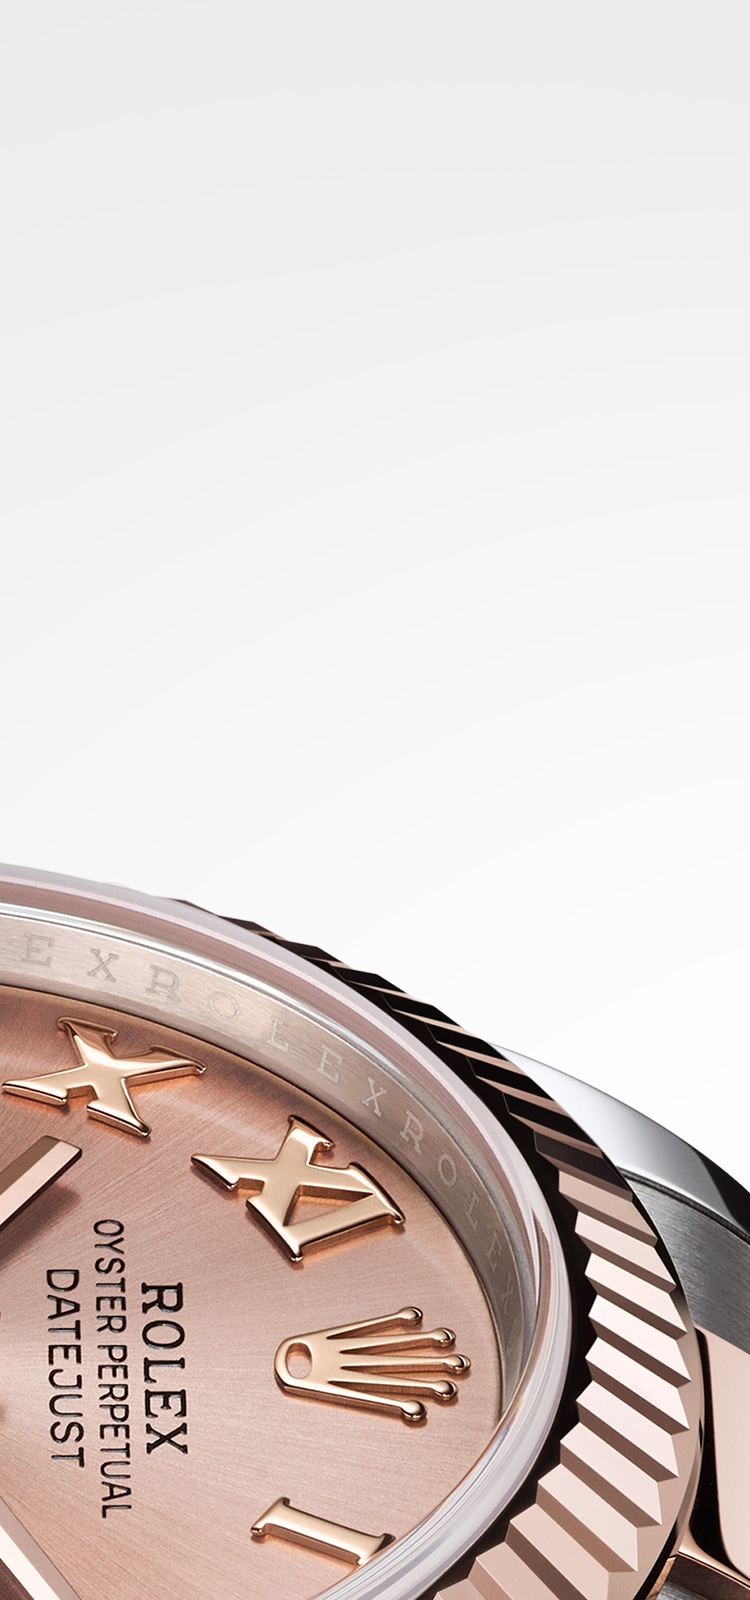 Rolex Men's Rolex Turnograph Datejust Watch 116264